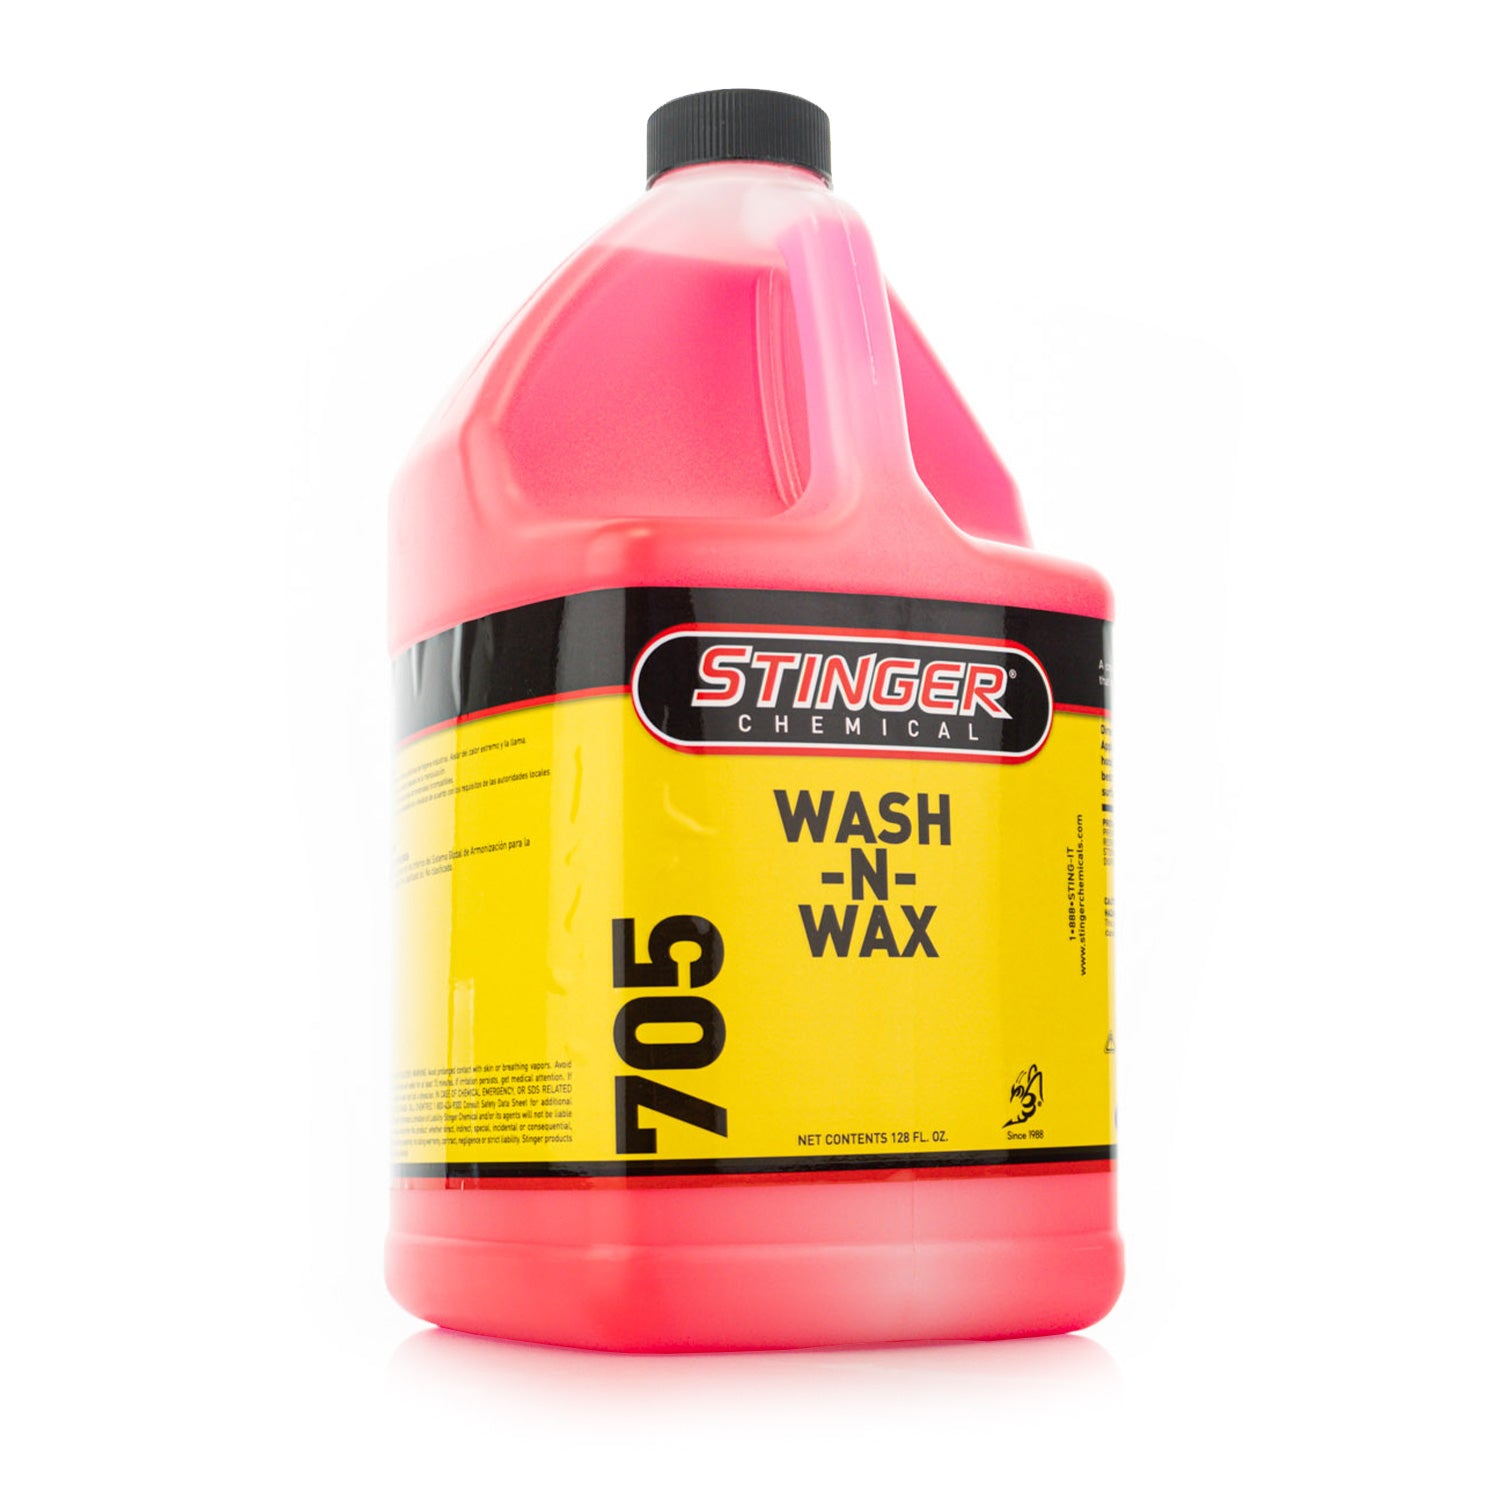 Stinger Chemical Wash-N-Wax